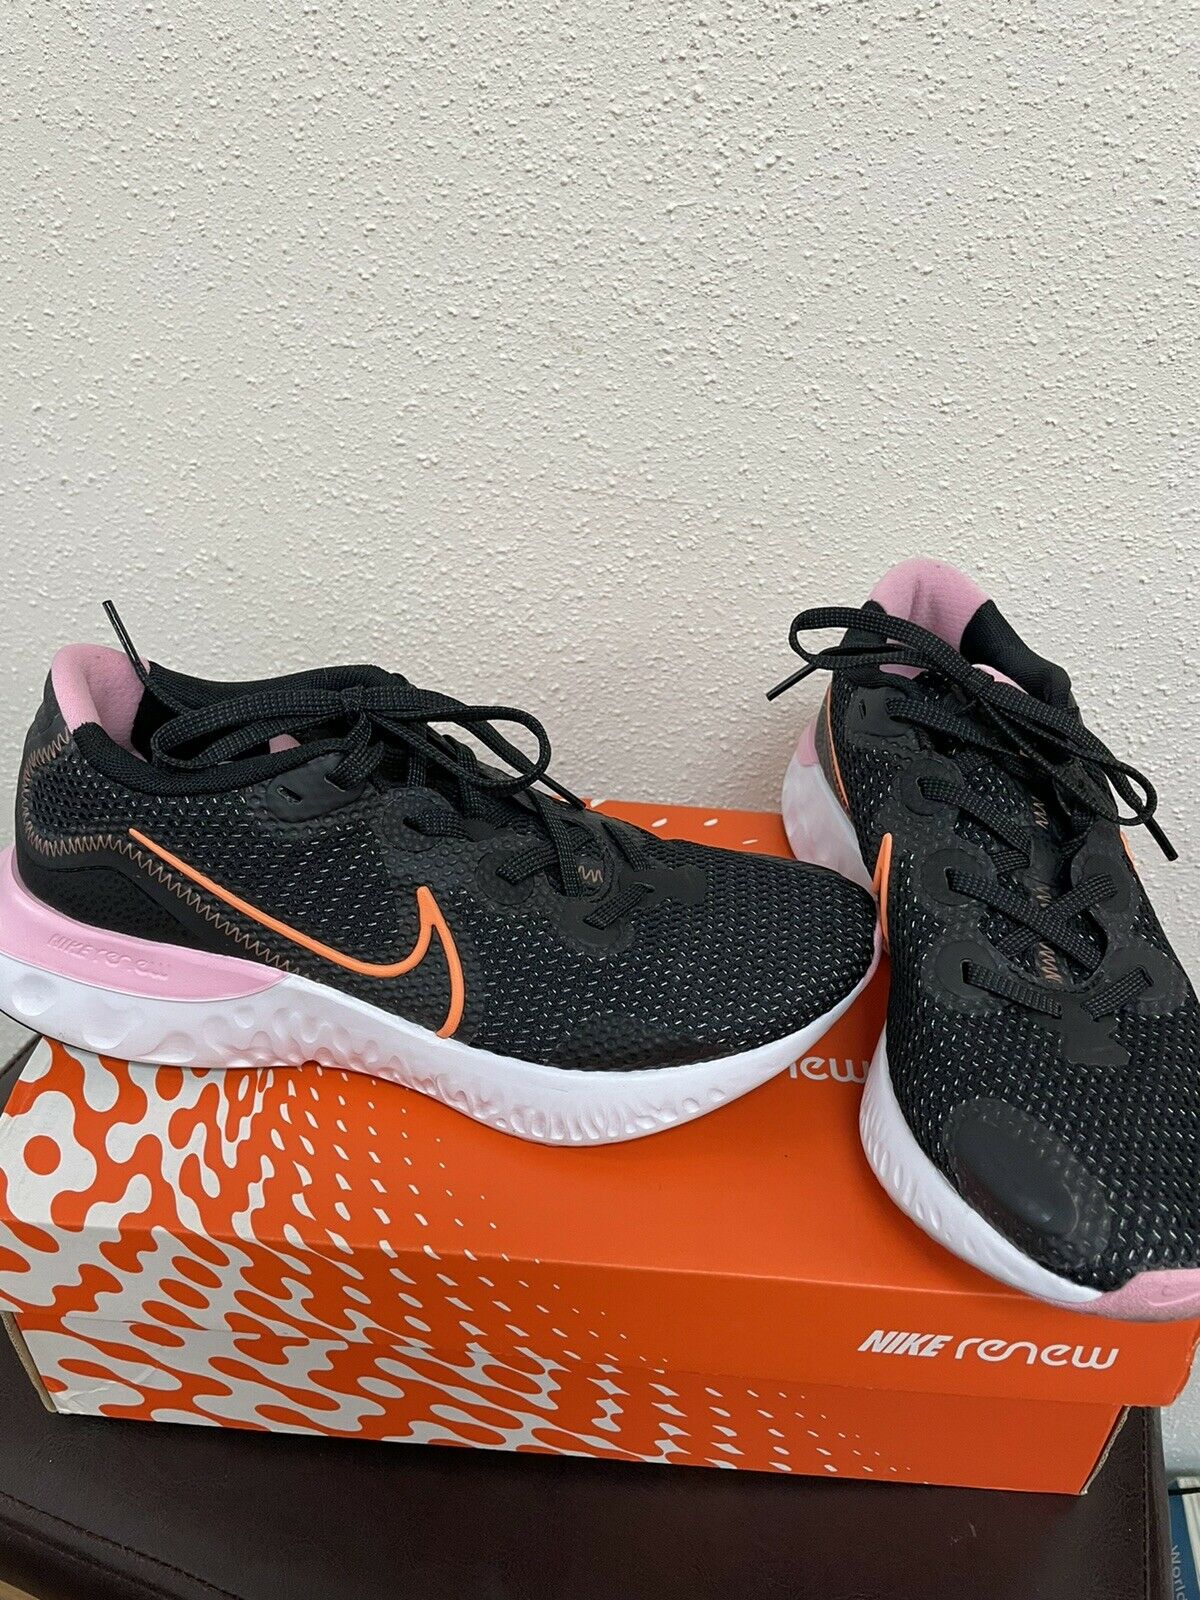 NIKE Women's Renew Run Running Shoes 'Black/Pink/Orange' - Size 8